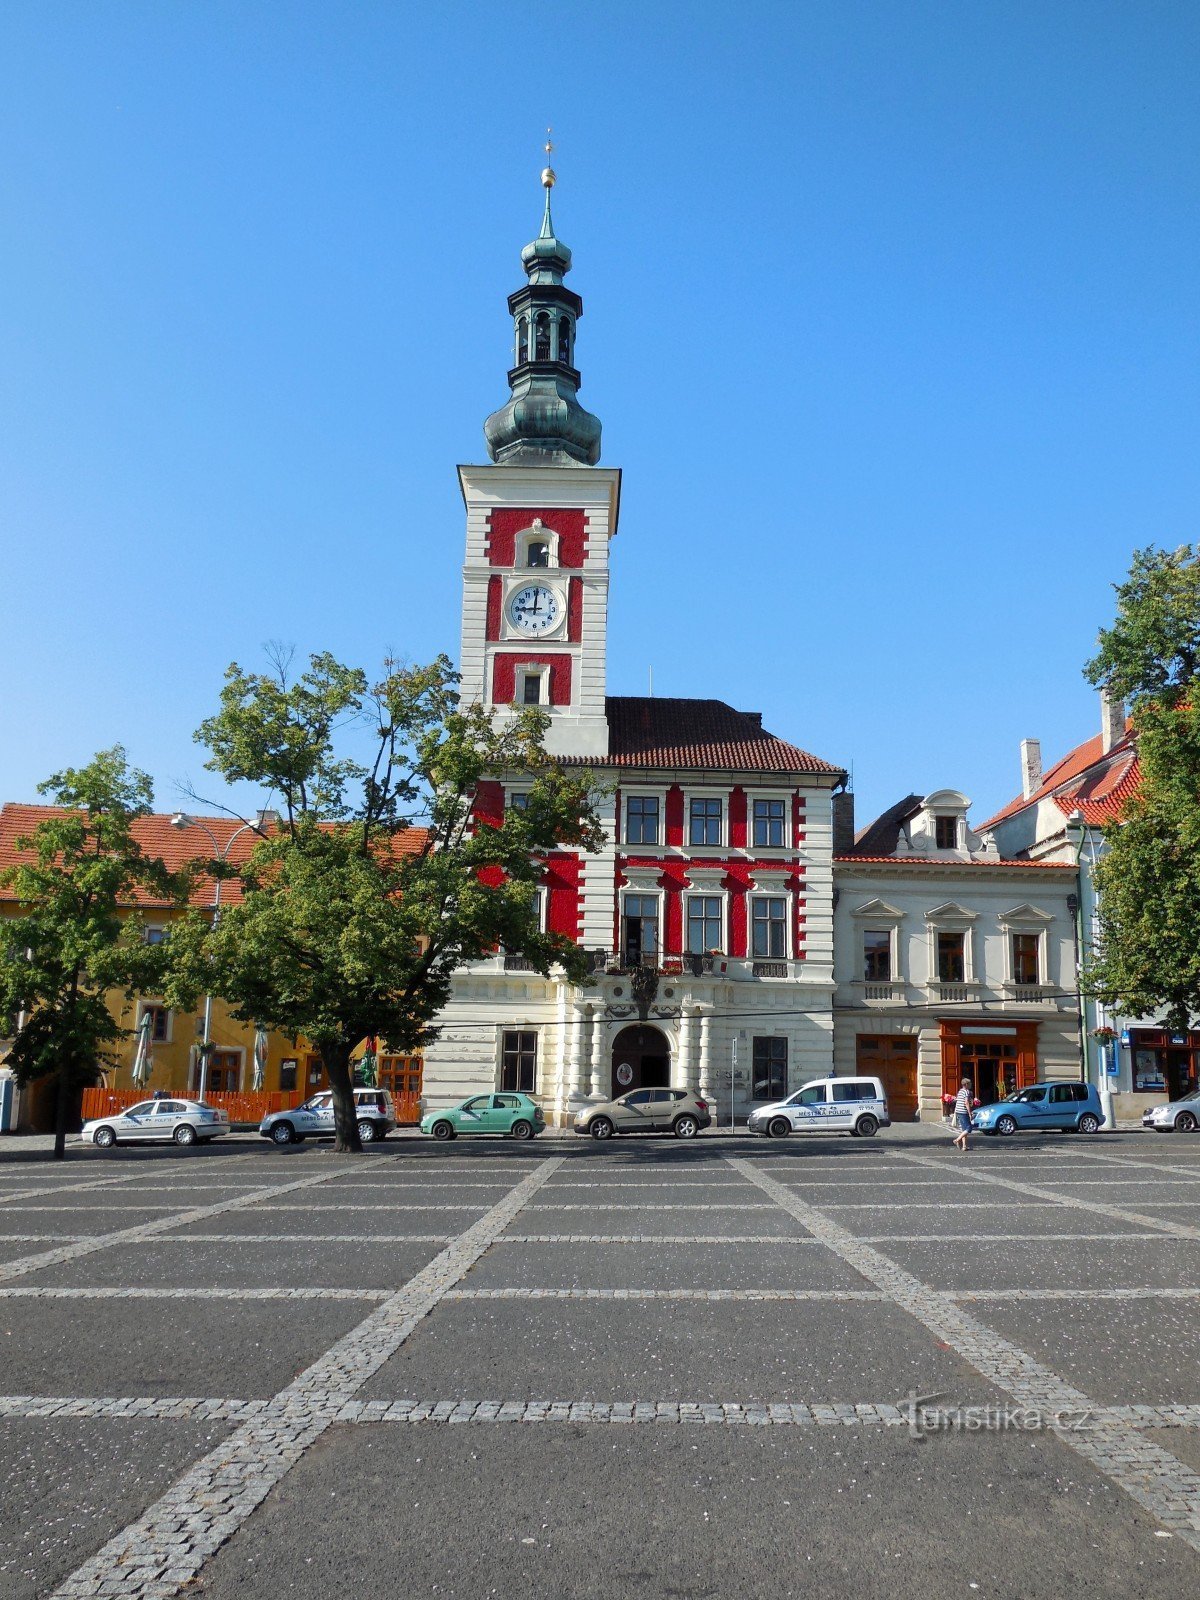 Slaný - Prefeitura, Praça Masarykov